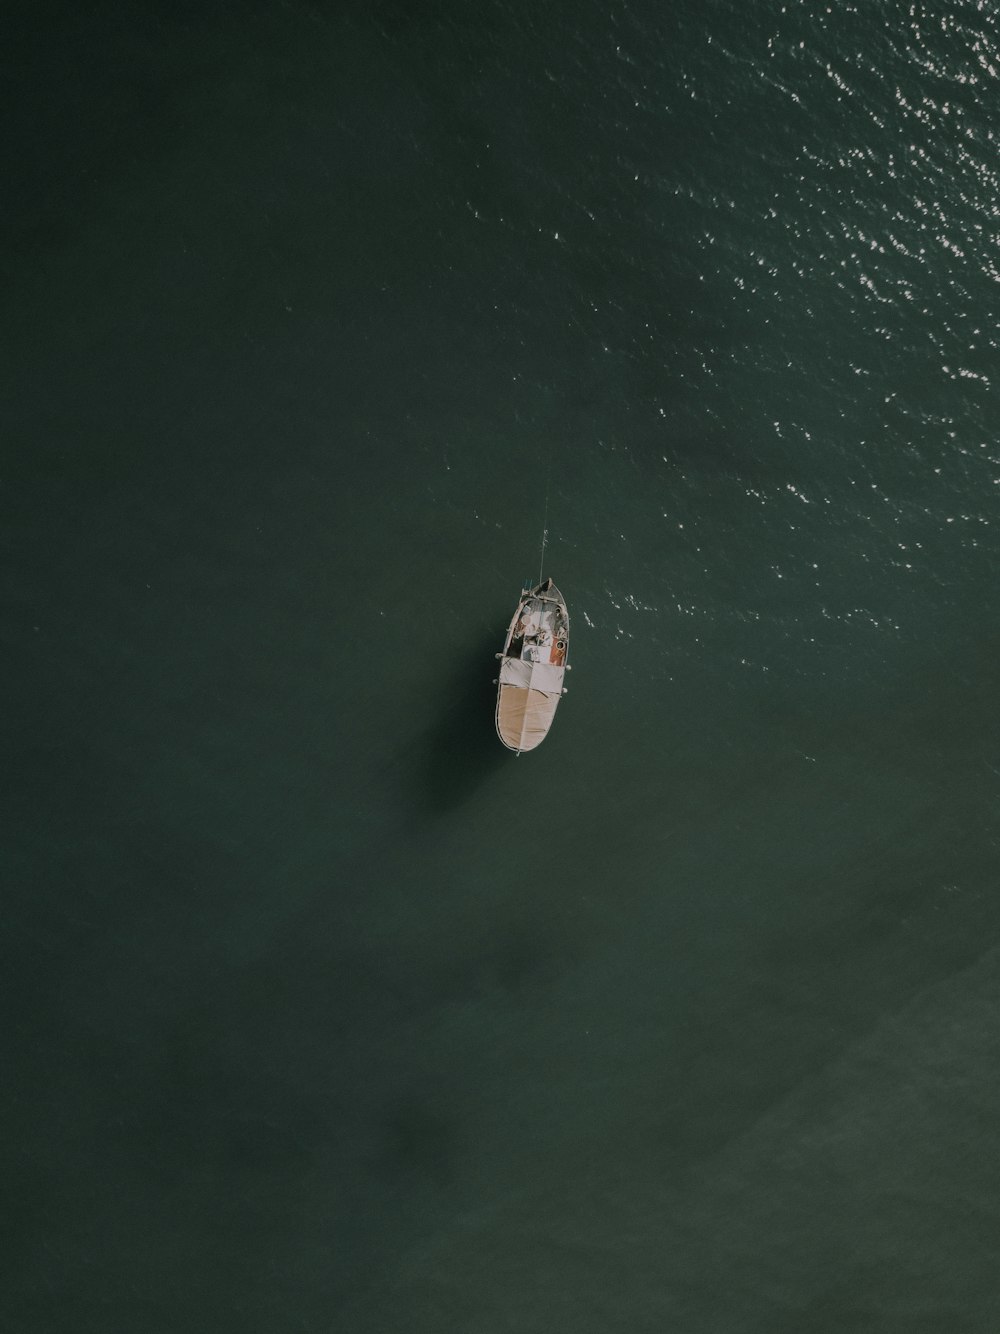 Braunes Boot auf grünem Meer während des Tages